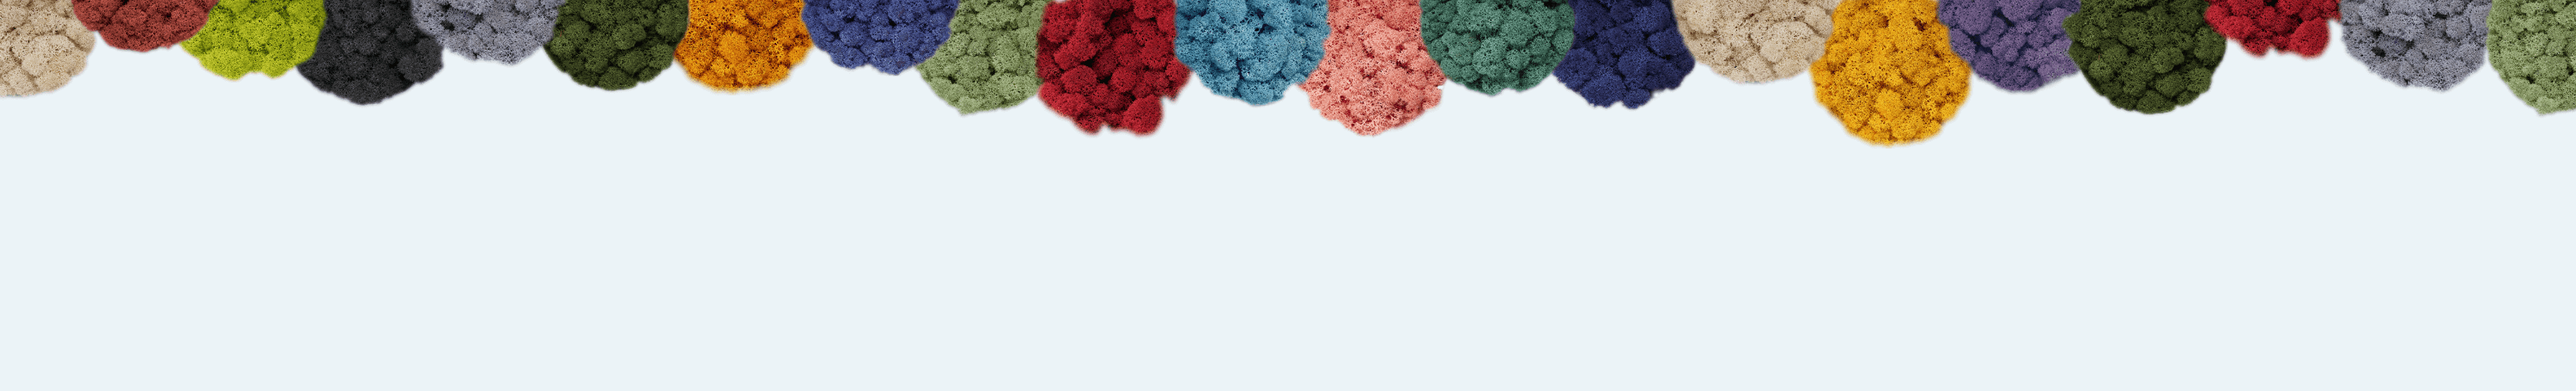 Ligne en lichen stabilisé de nombreuses couleurs différentes.